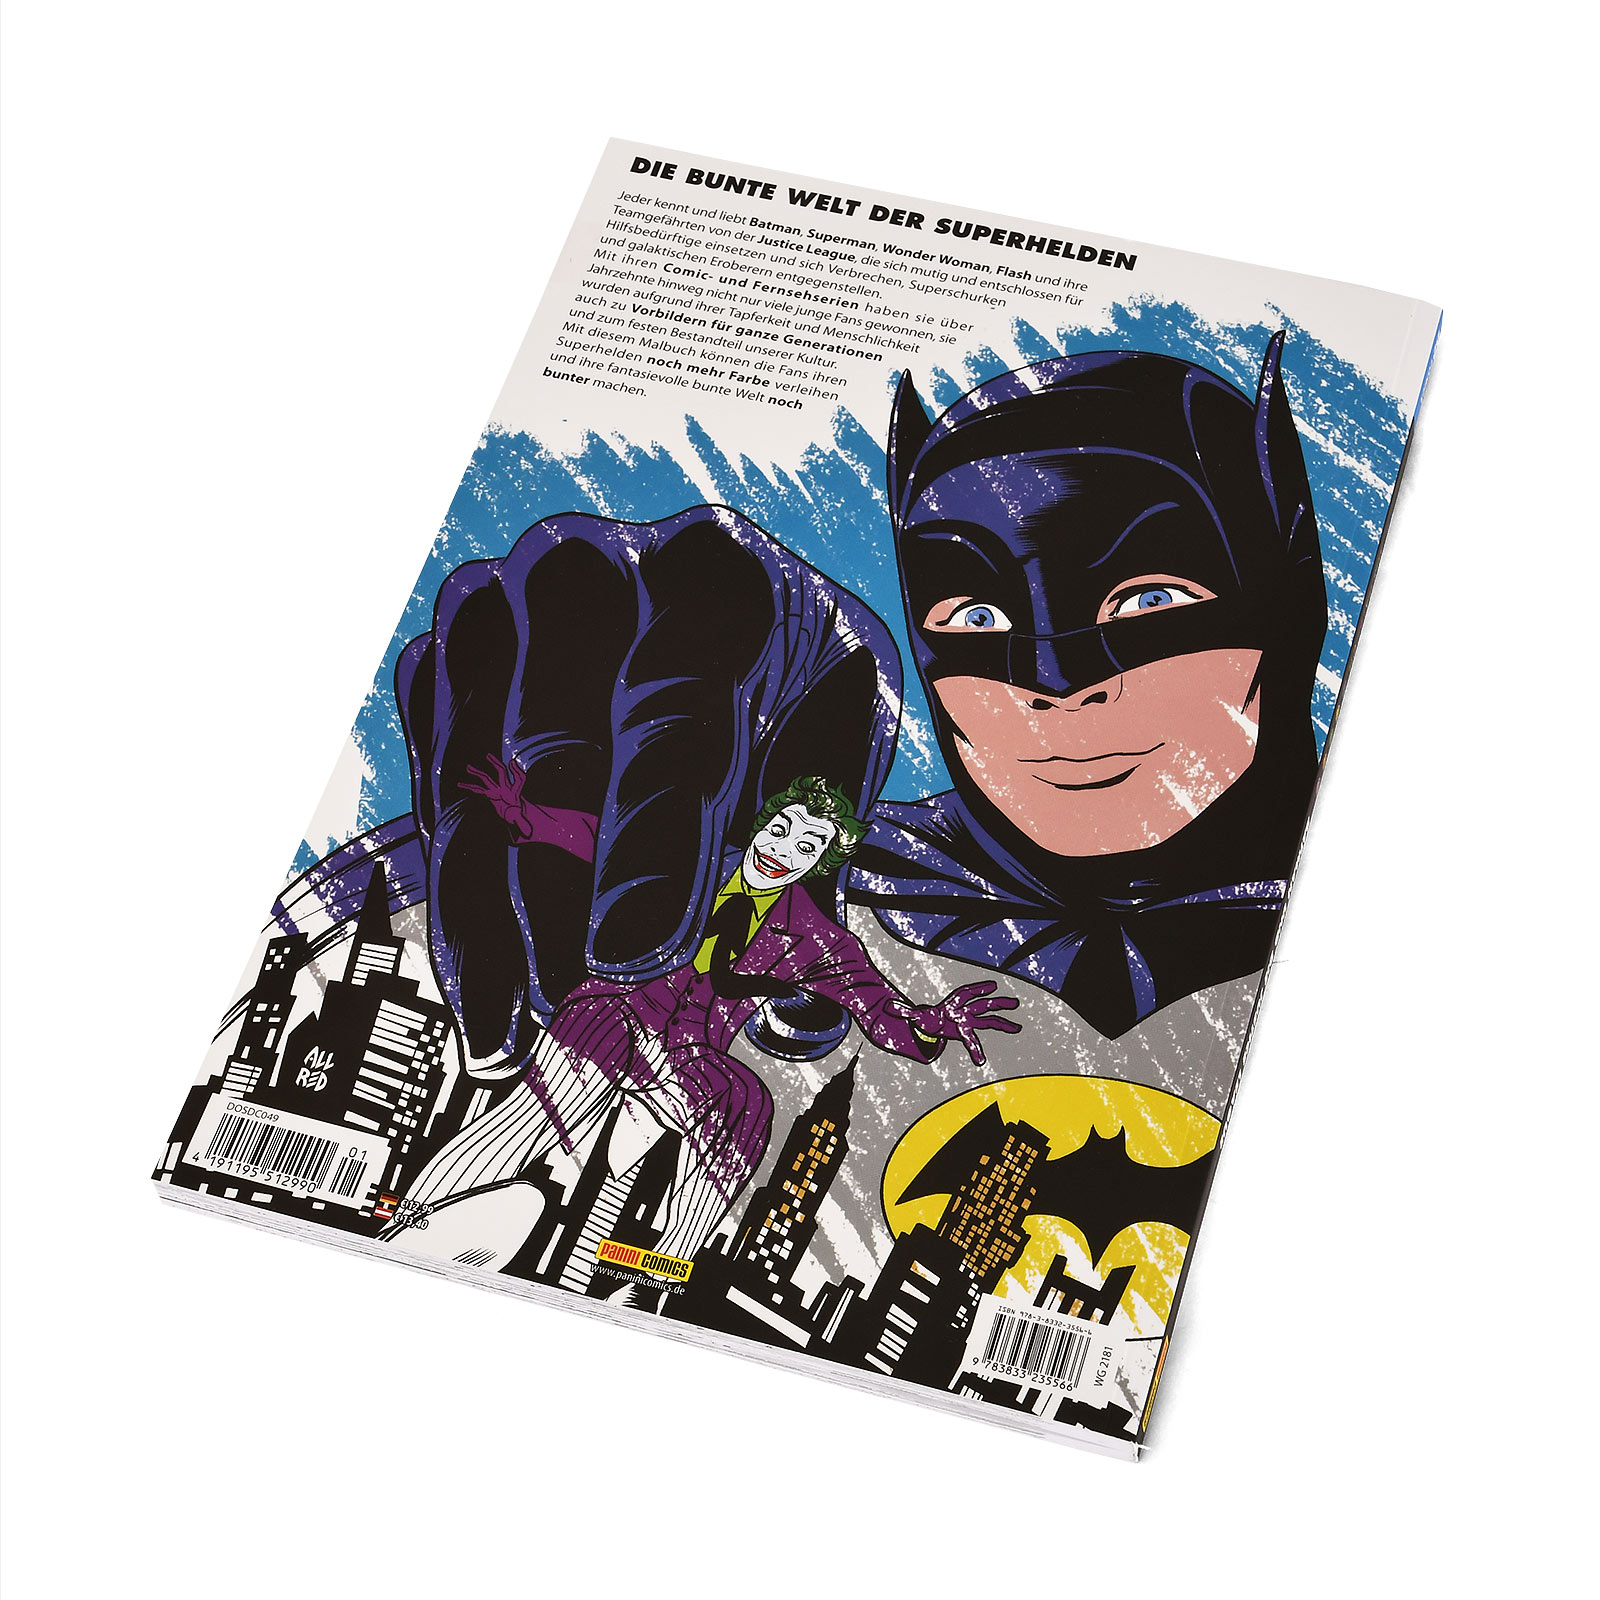 Batman und die Justice League - DC Comics Ausmalbuch